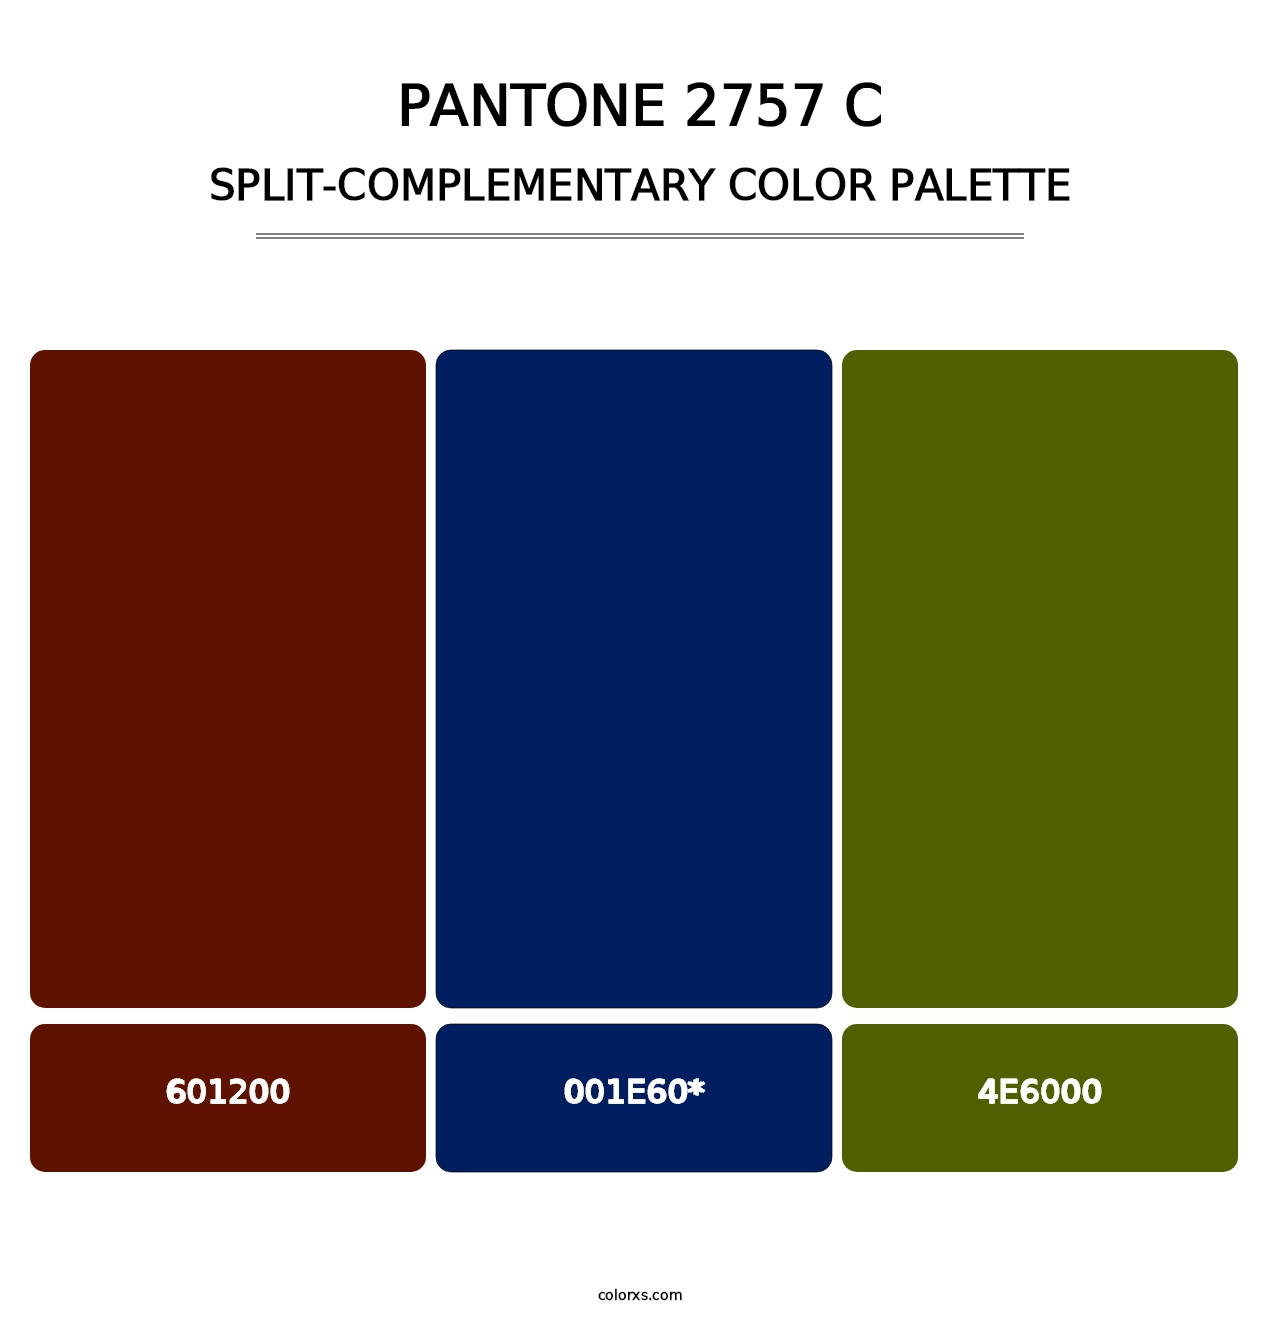 PANTONE 2757 C - Split-Complementary Color Palette